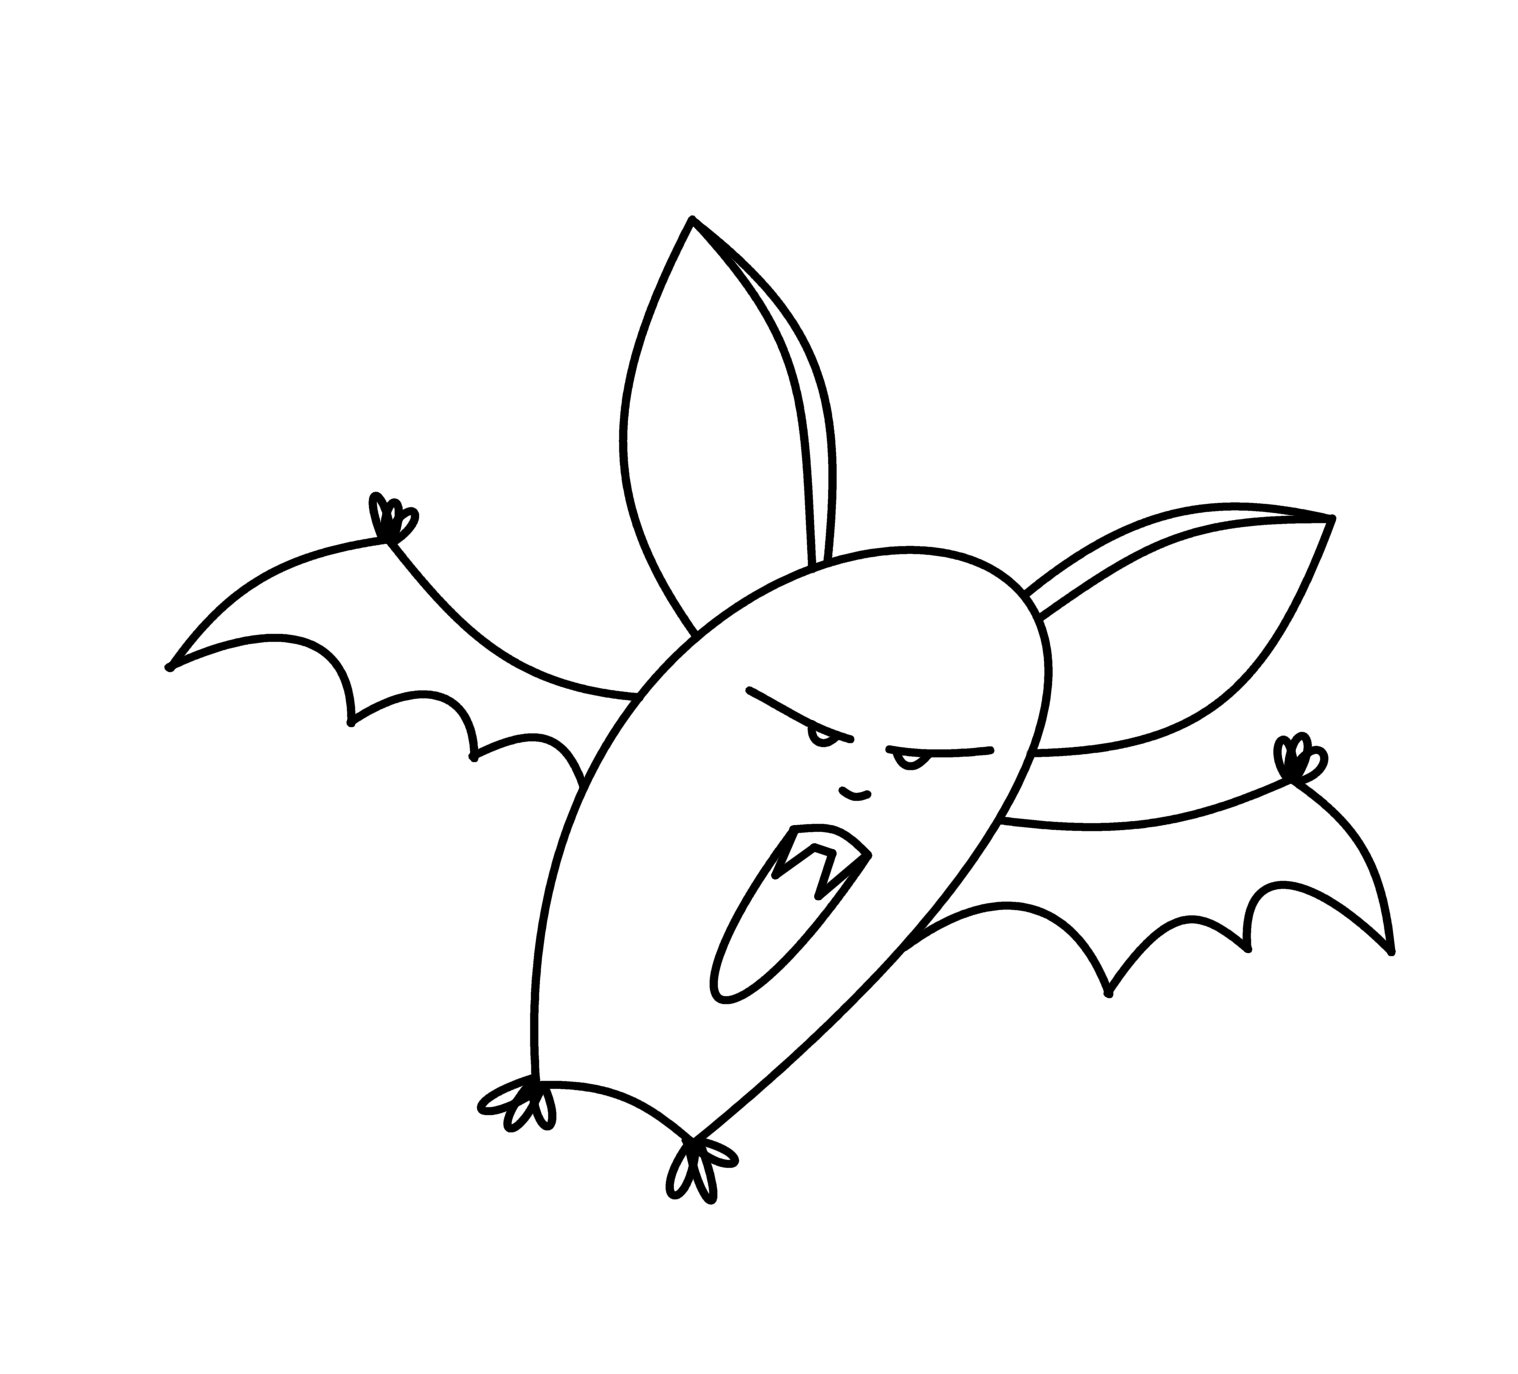 Bat Line Drawing at GetDrawings | Free download